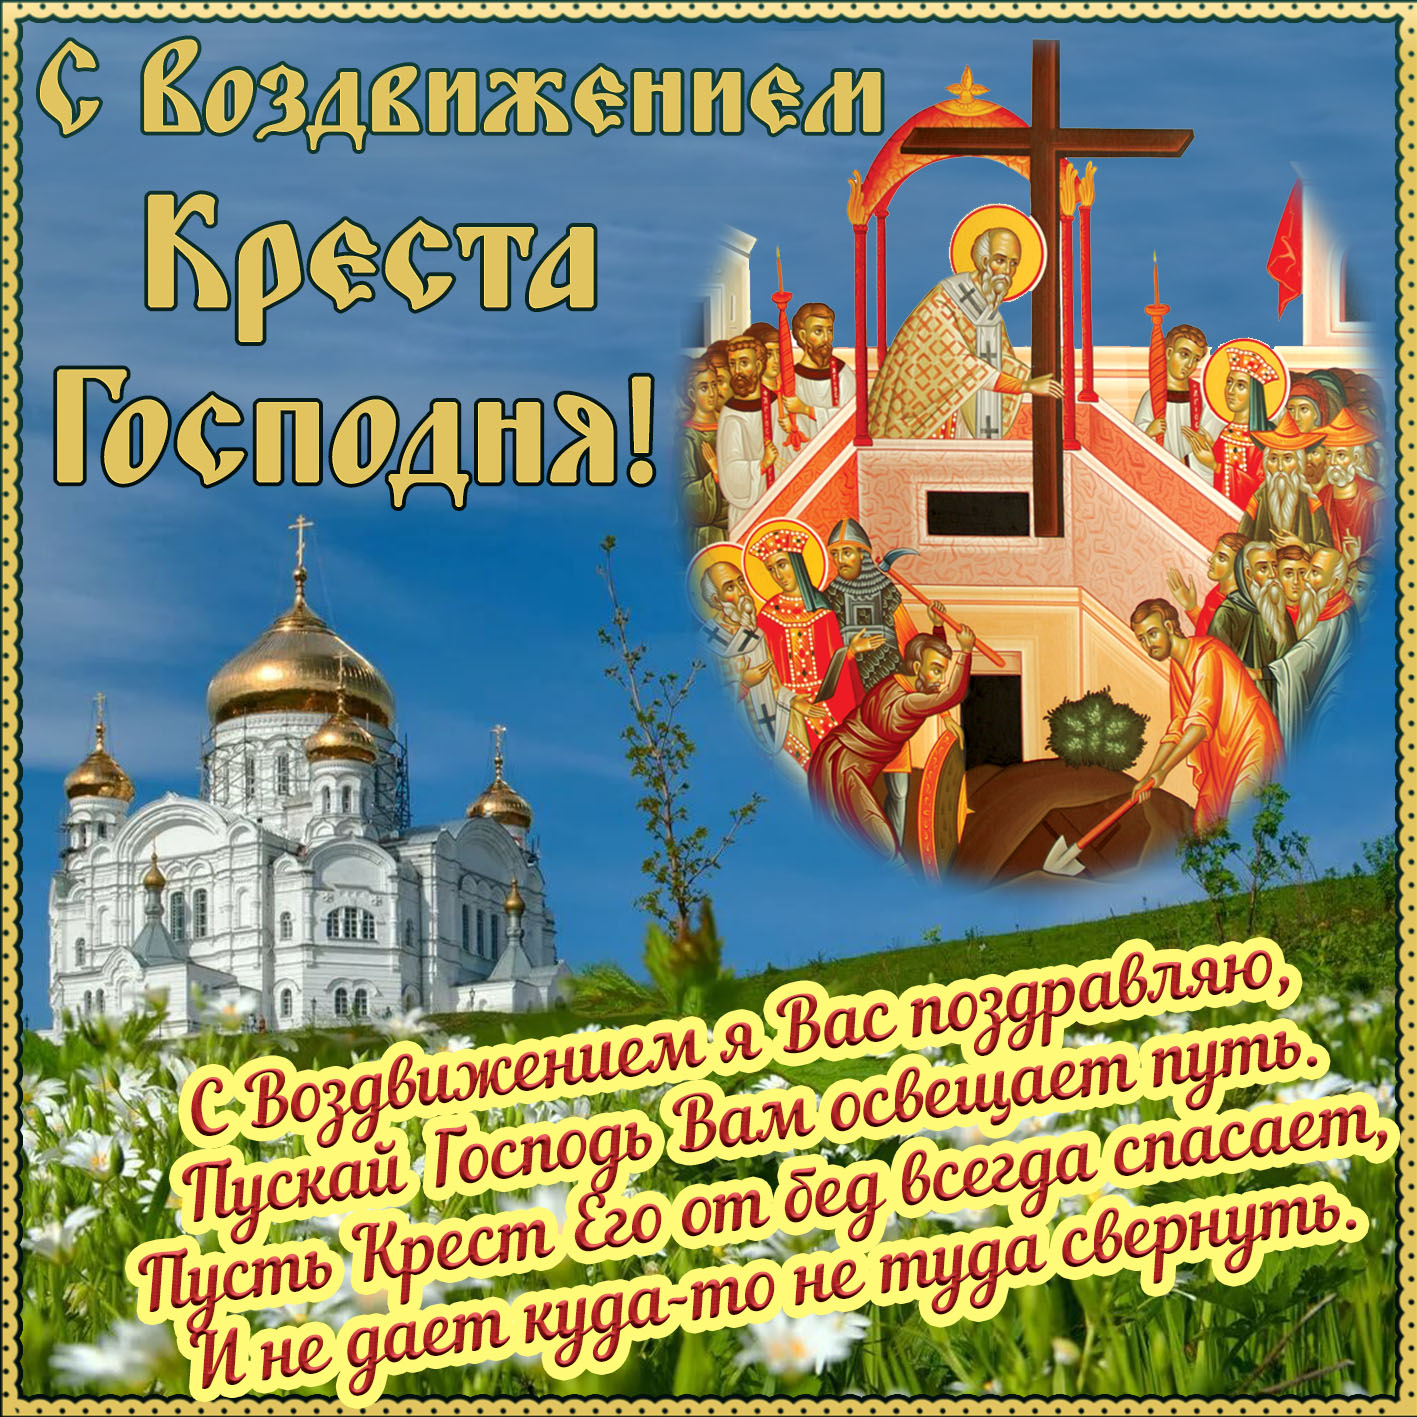 Картинка с иконой Воздвижения Креста Господня.